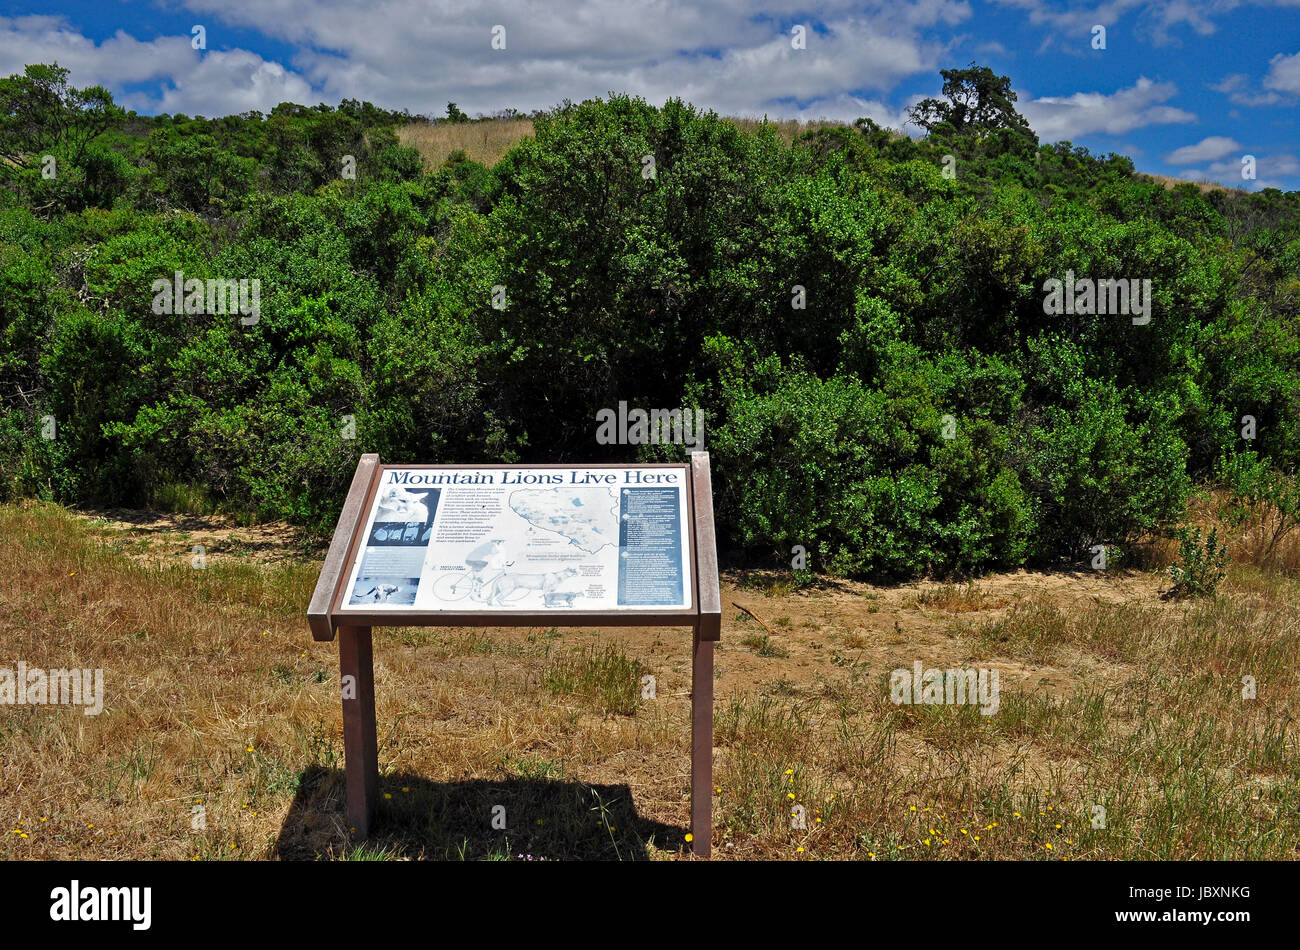 Señal de advertencia de los Leones de montaña, Joseph D. Condado Grant Park, el condado de Santa Clara, California, EE.UU. Foto de stock